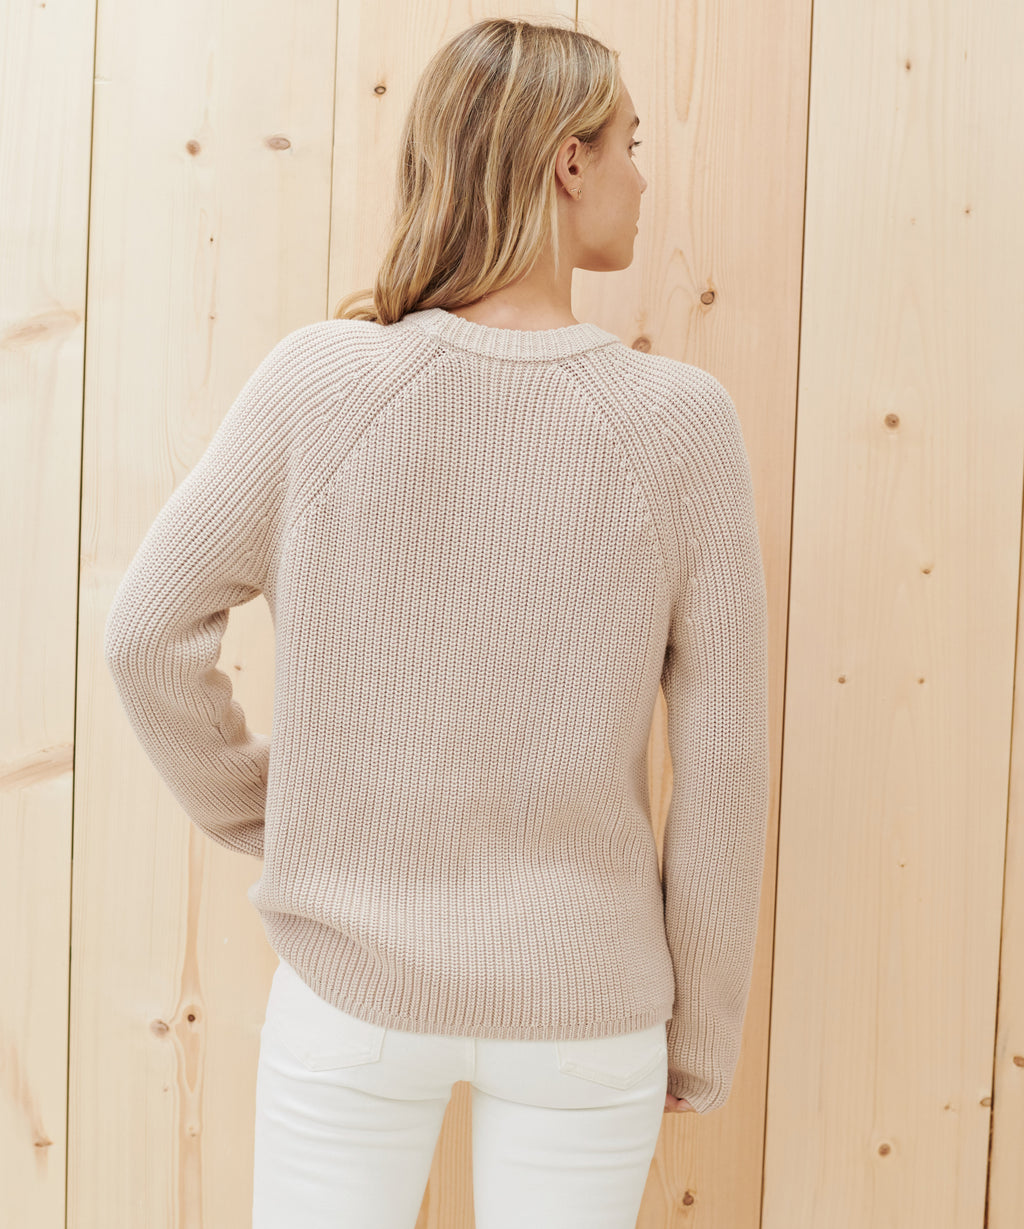 Cotton Fisherman Sweater – Jenni Kayne